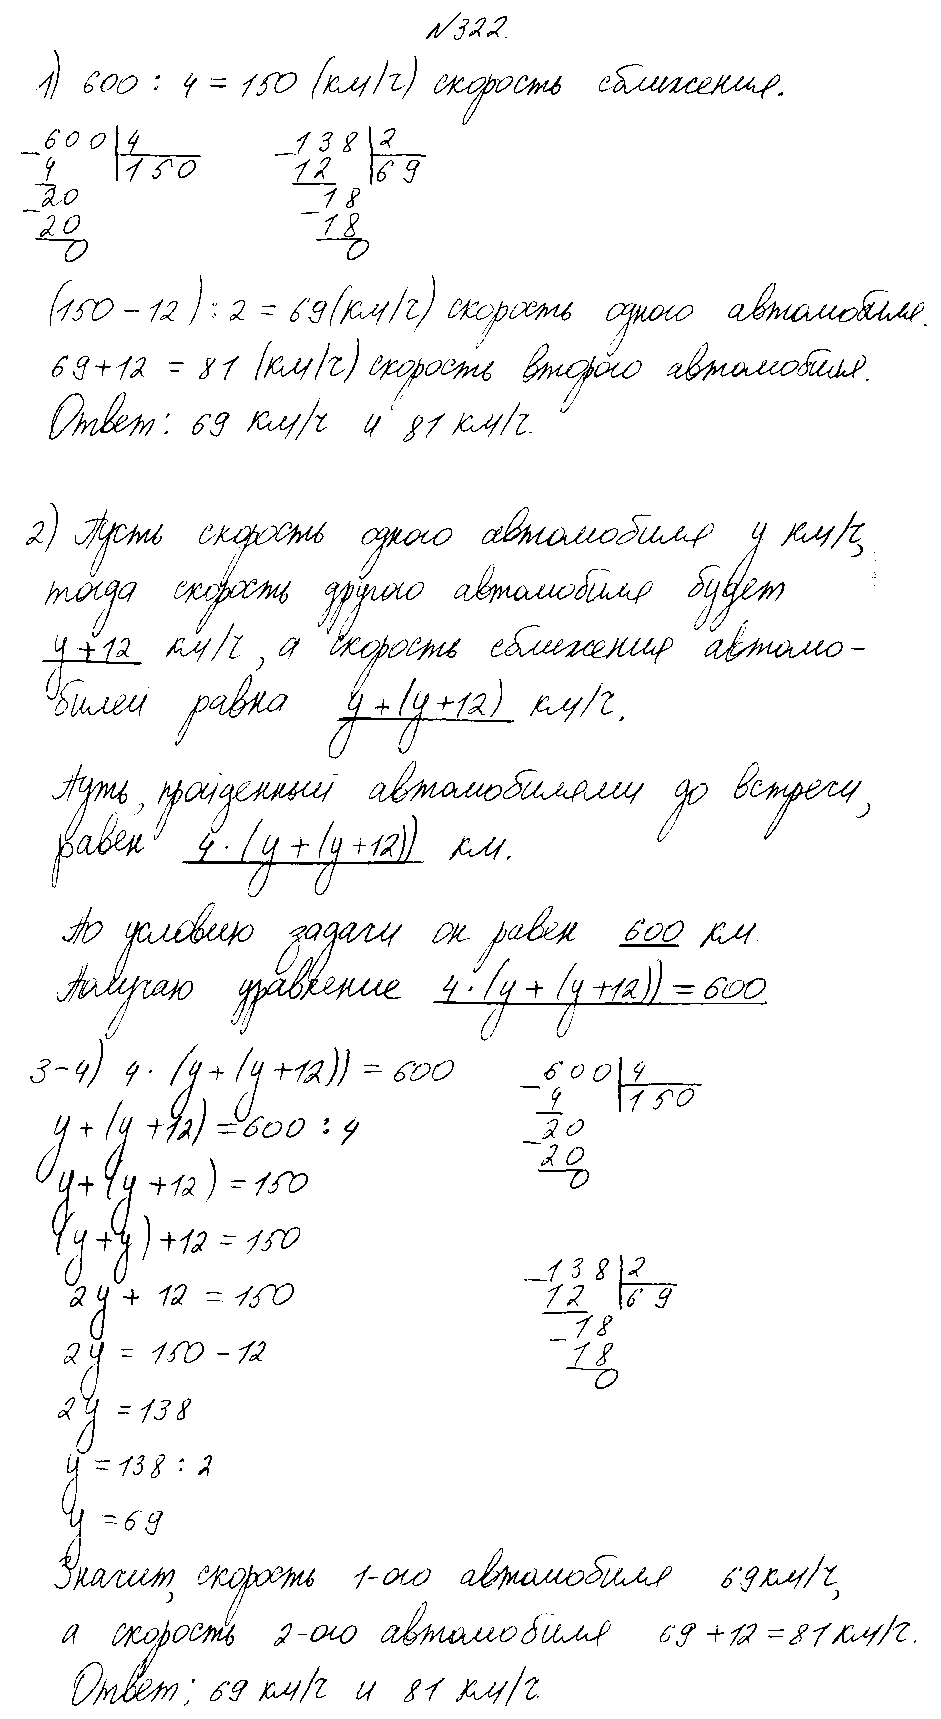 ГДЗ Математика 4 класс - 322